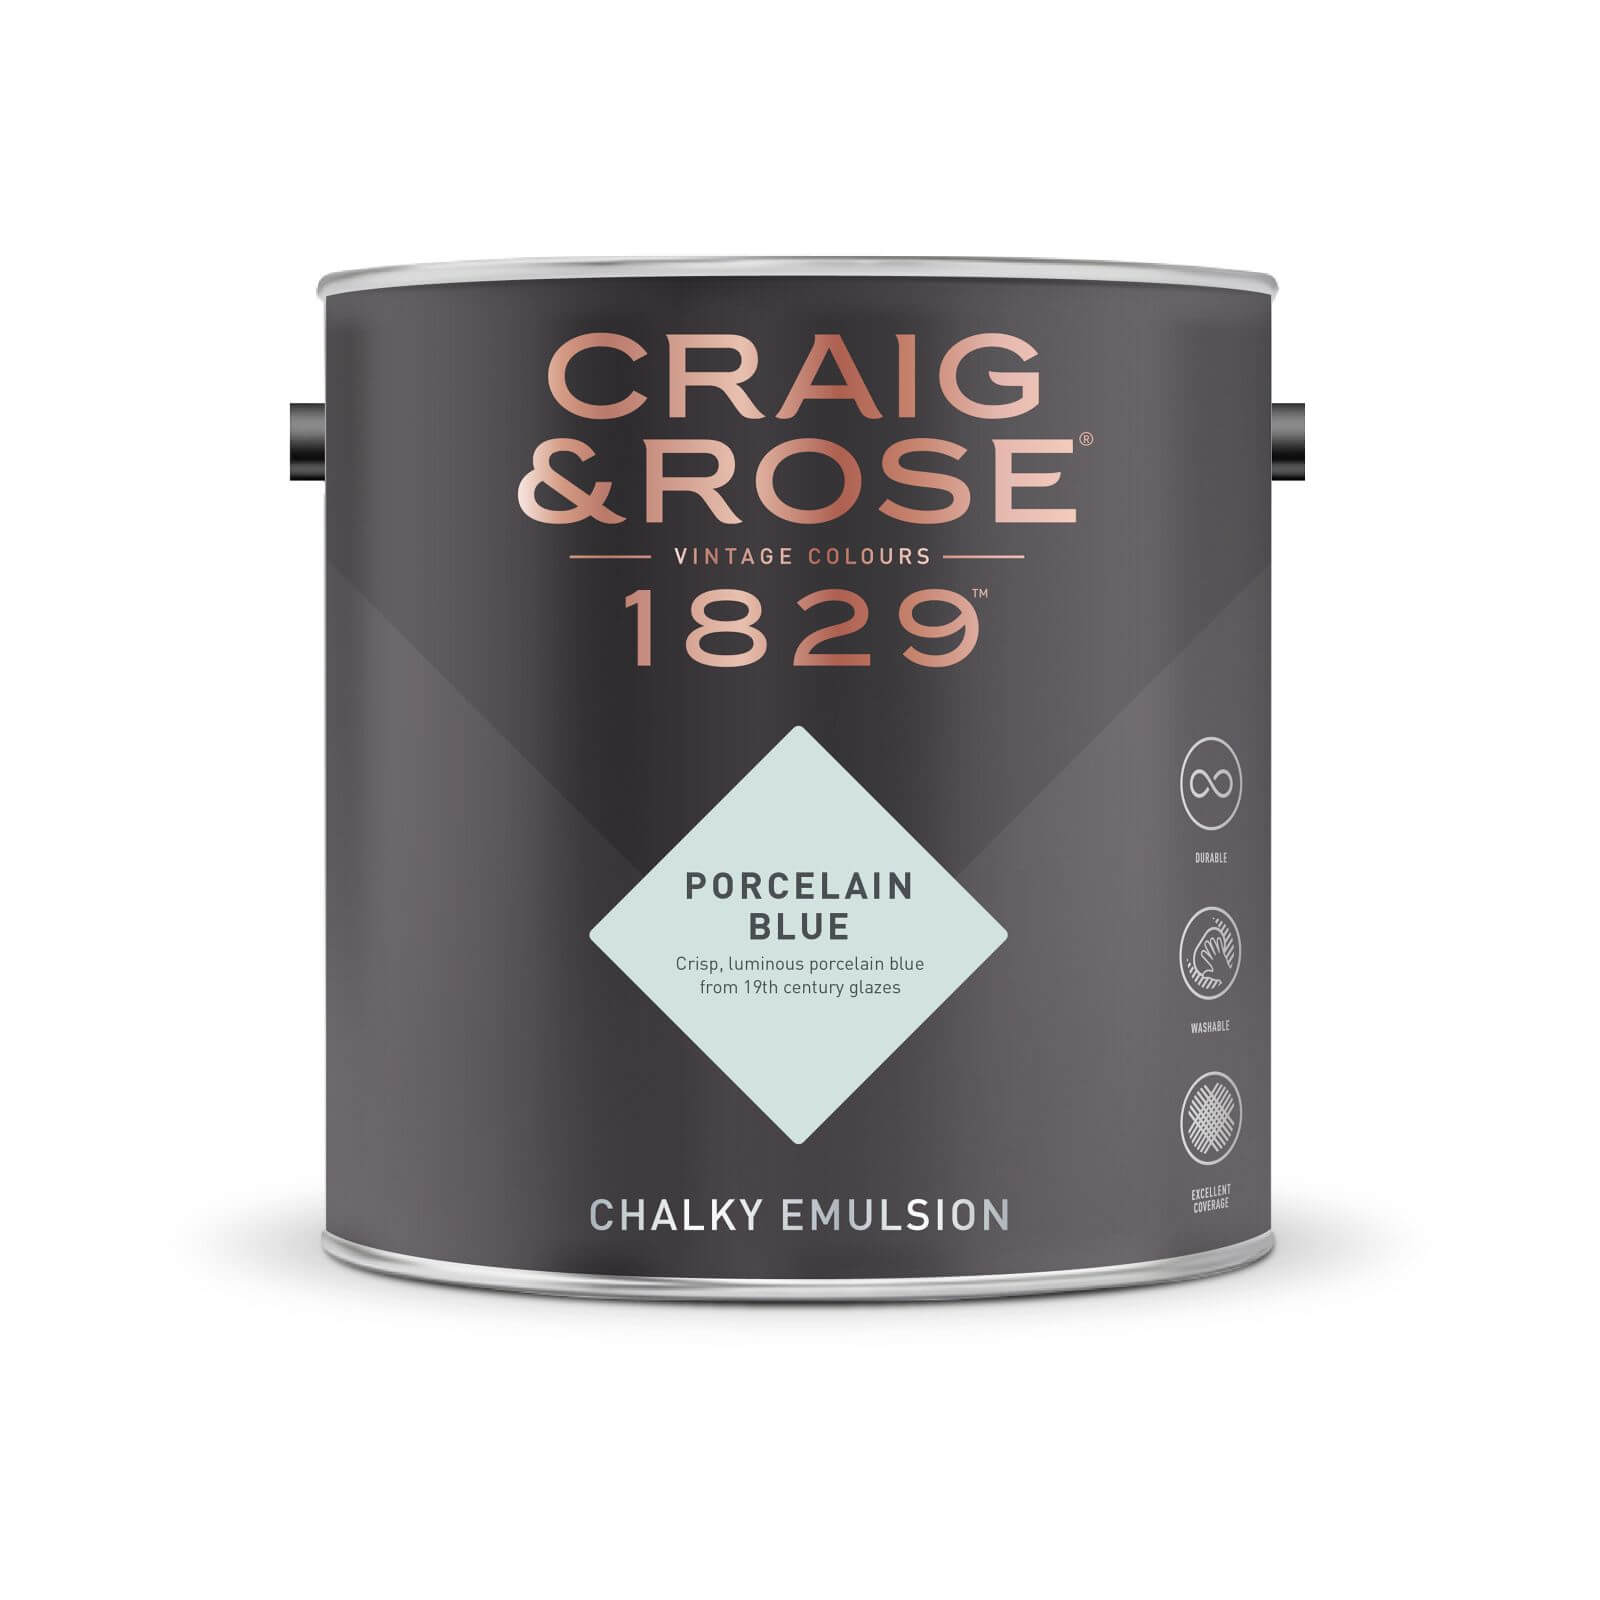 Craig & Rose 1829 Chalky Emulsion Paint Porcelain Blue - 5L